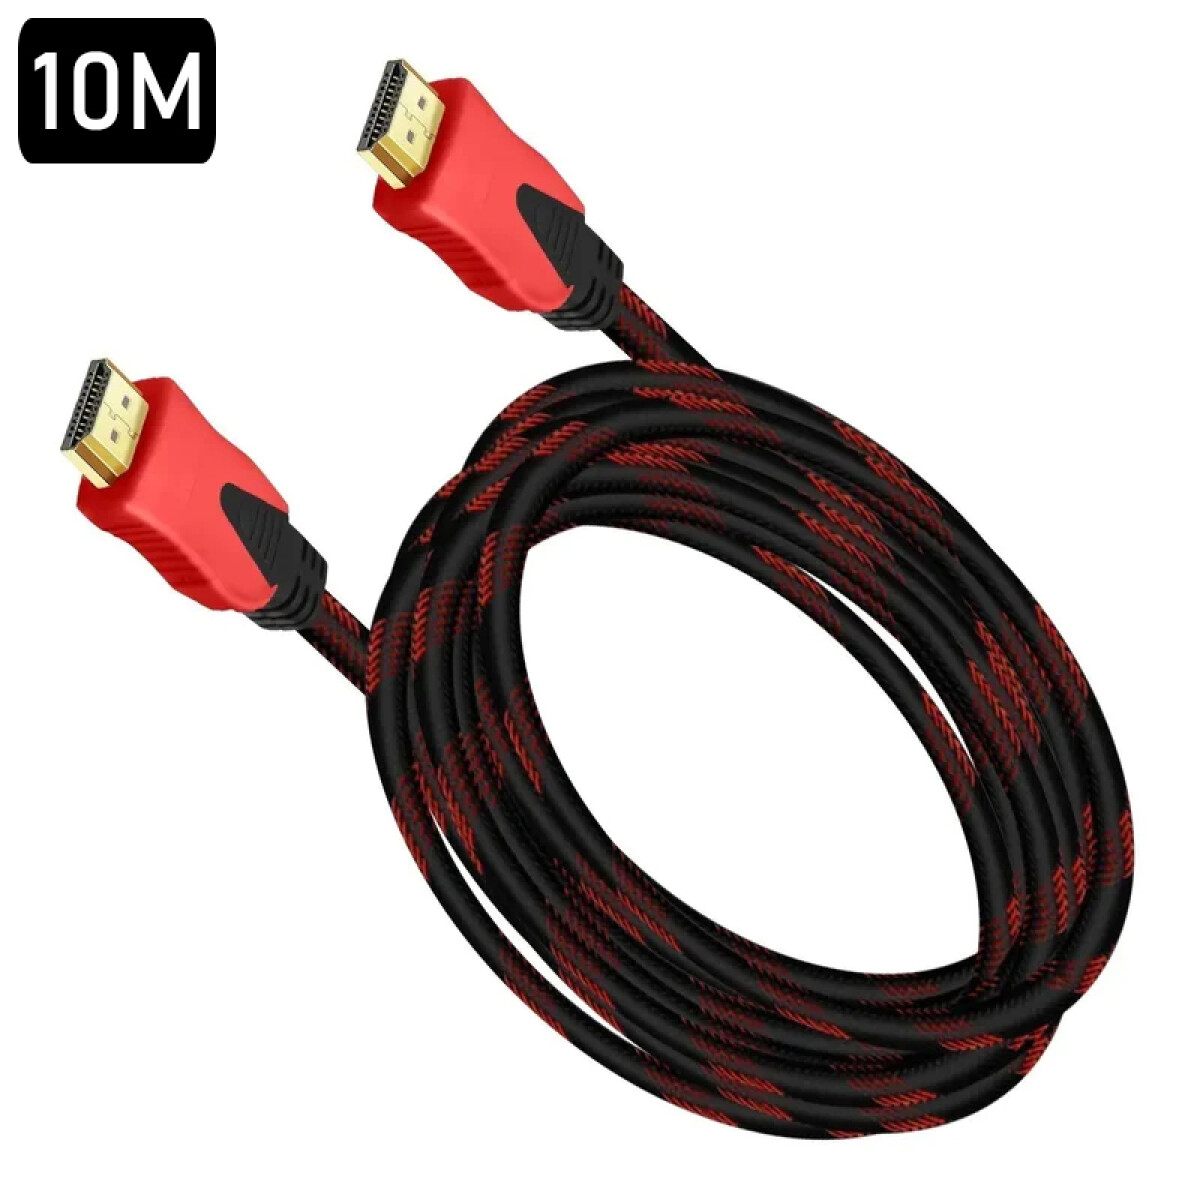 Cable HDMI 10M - Unica 